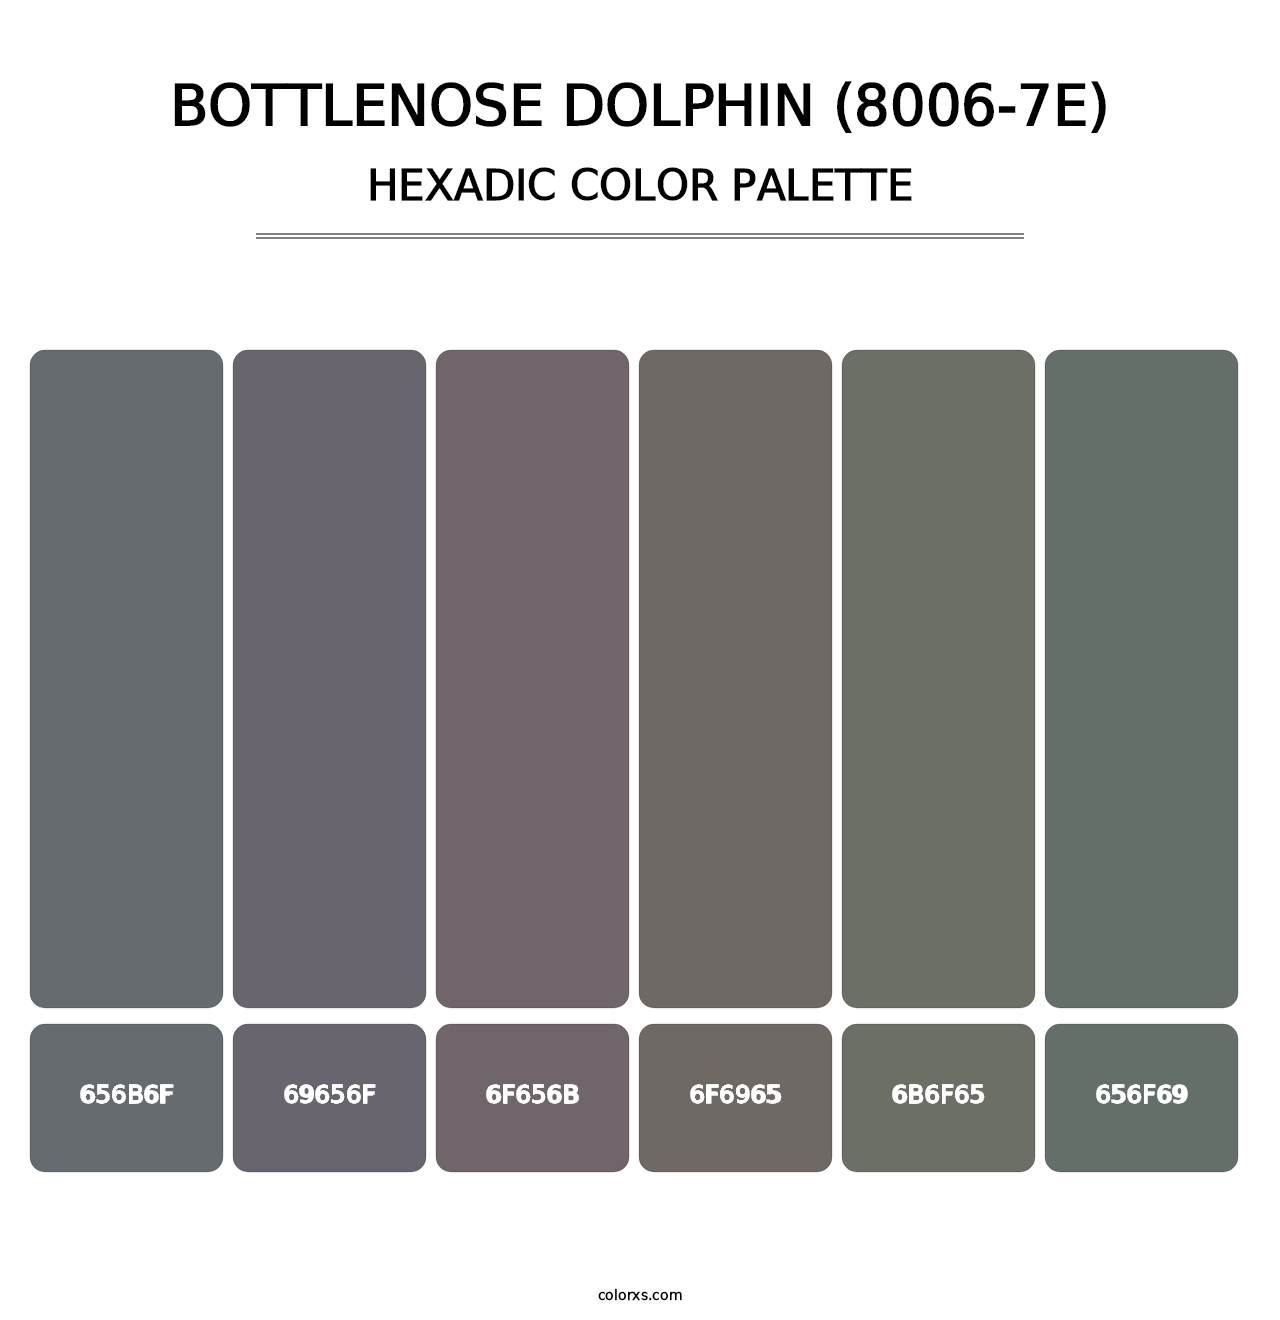 Bottlenose Dolphin (8006-7E) - Hexadic Color Palette